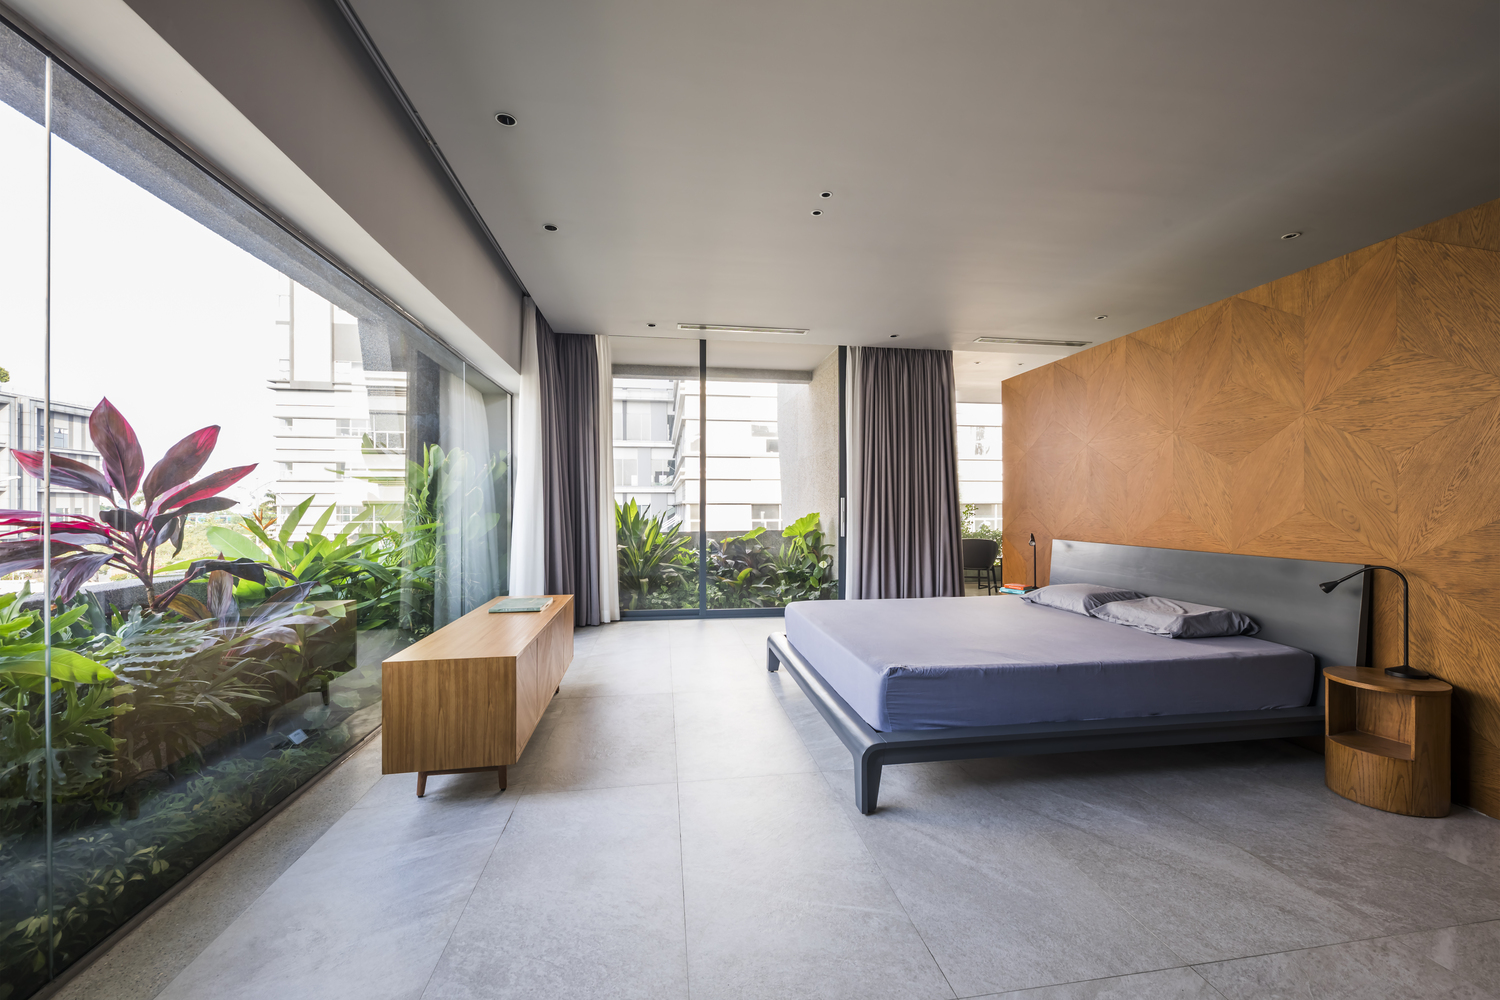 Phòng ngủ thiết kế tối giản với xung quanh là tường kính, sự tiết chế về mặt nội thất cũng giúp cho không gian căn phòng đã rộng rãi càng thêm thoáng đãng.